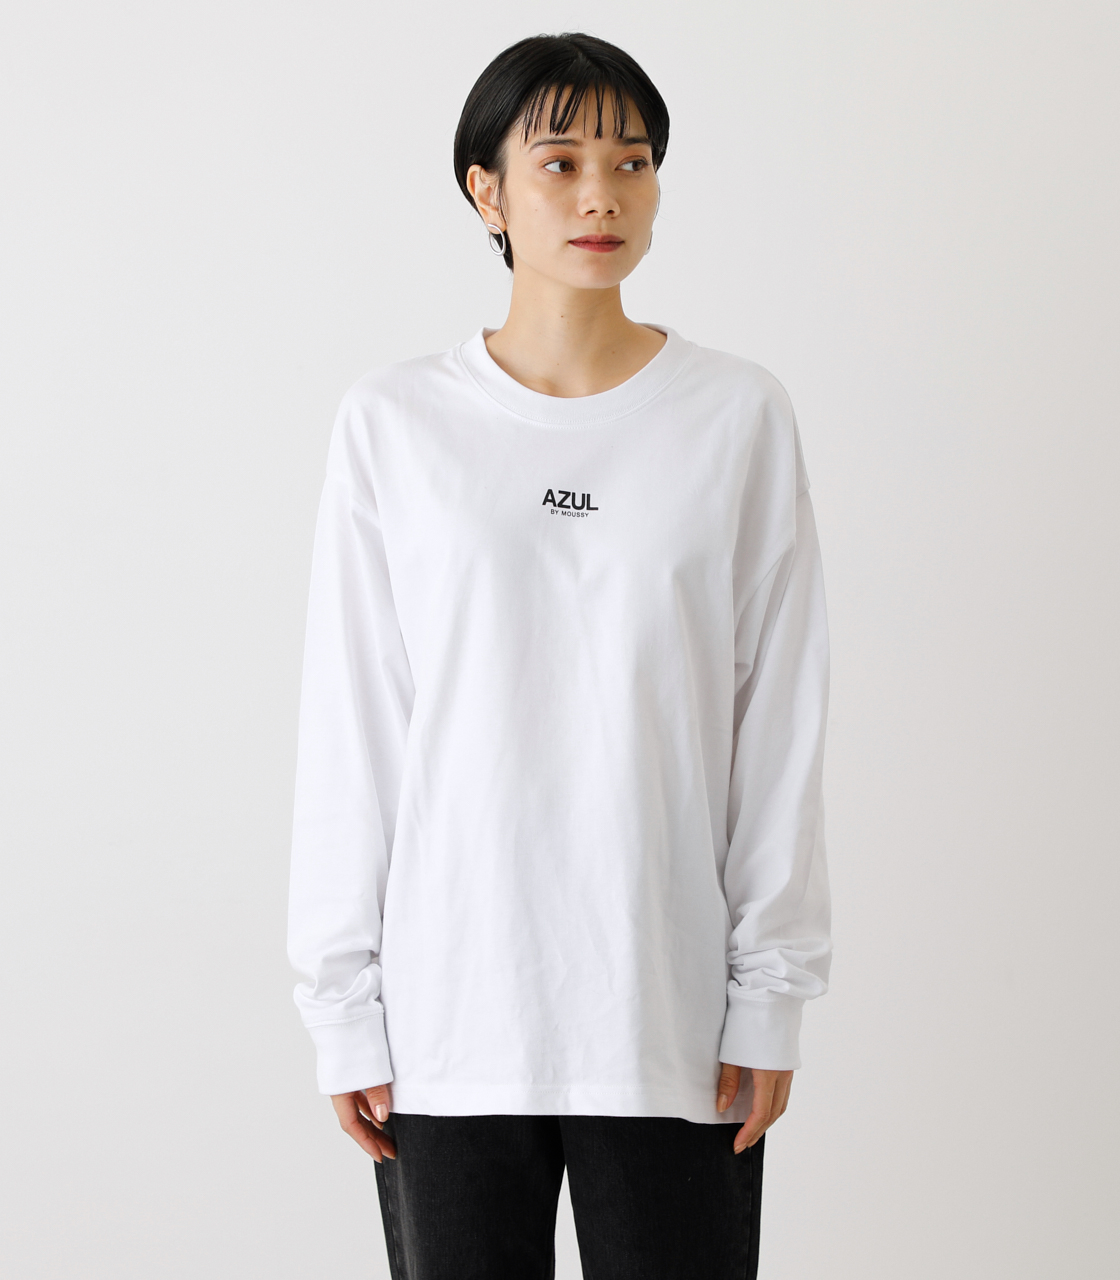 AZUL 長袖シャツ ロンT トップス Mサイズ レディース服 シンプル - ニット